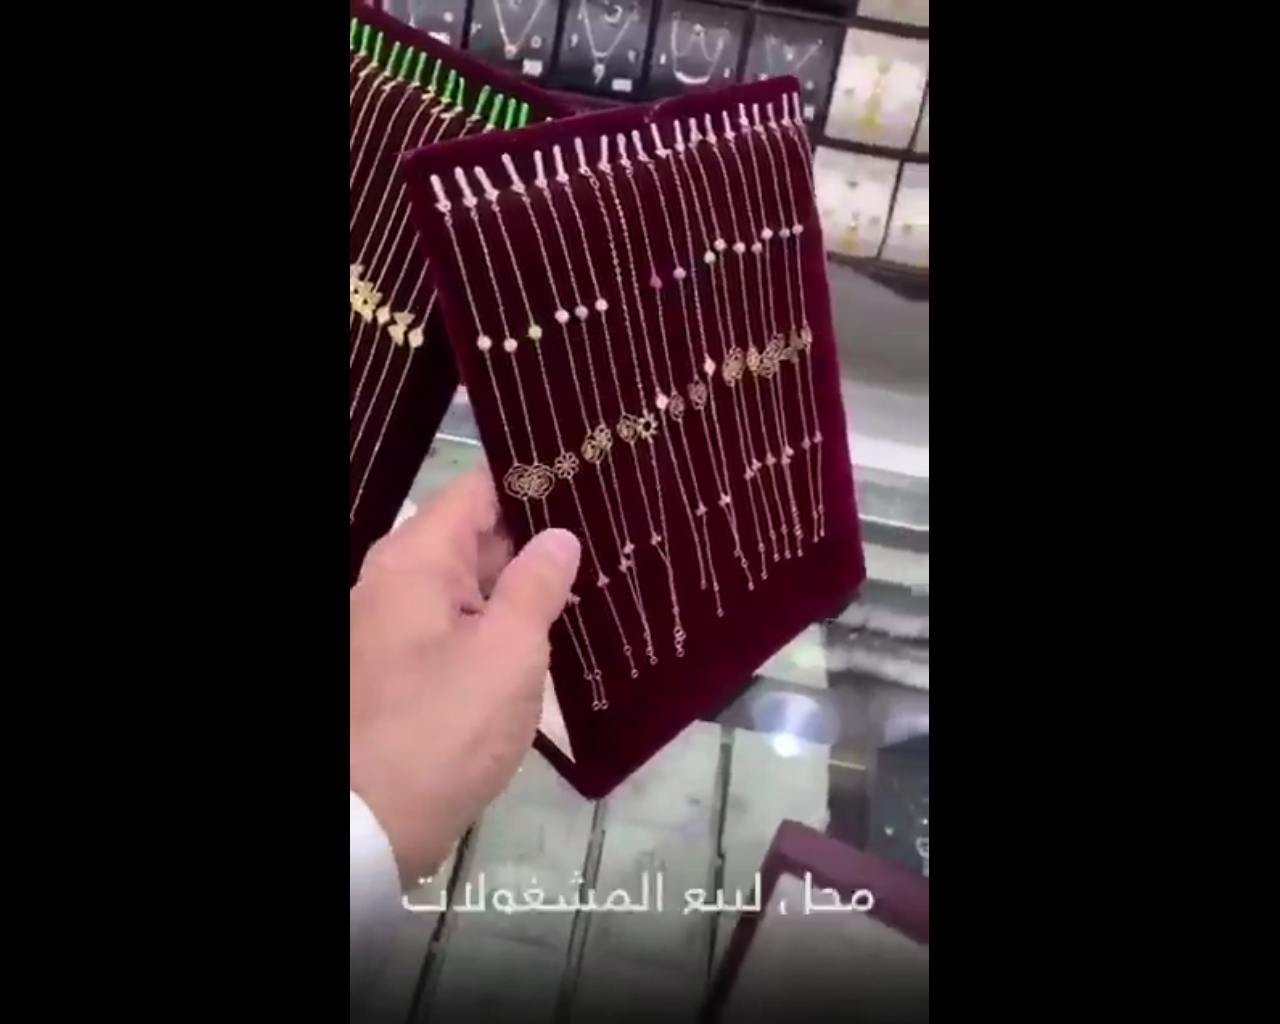 فيديو.. ضبط منشأة ذهب ومجوهرات أعلنت عن تخفيضات مضللة - المواطن